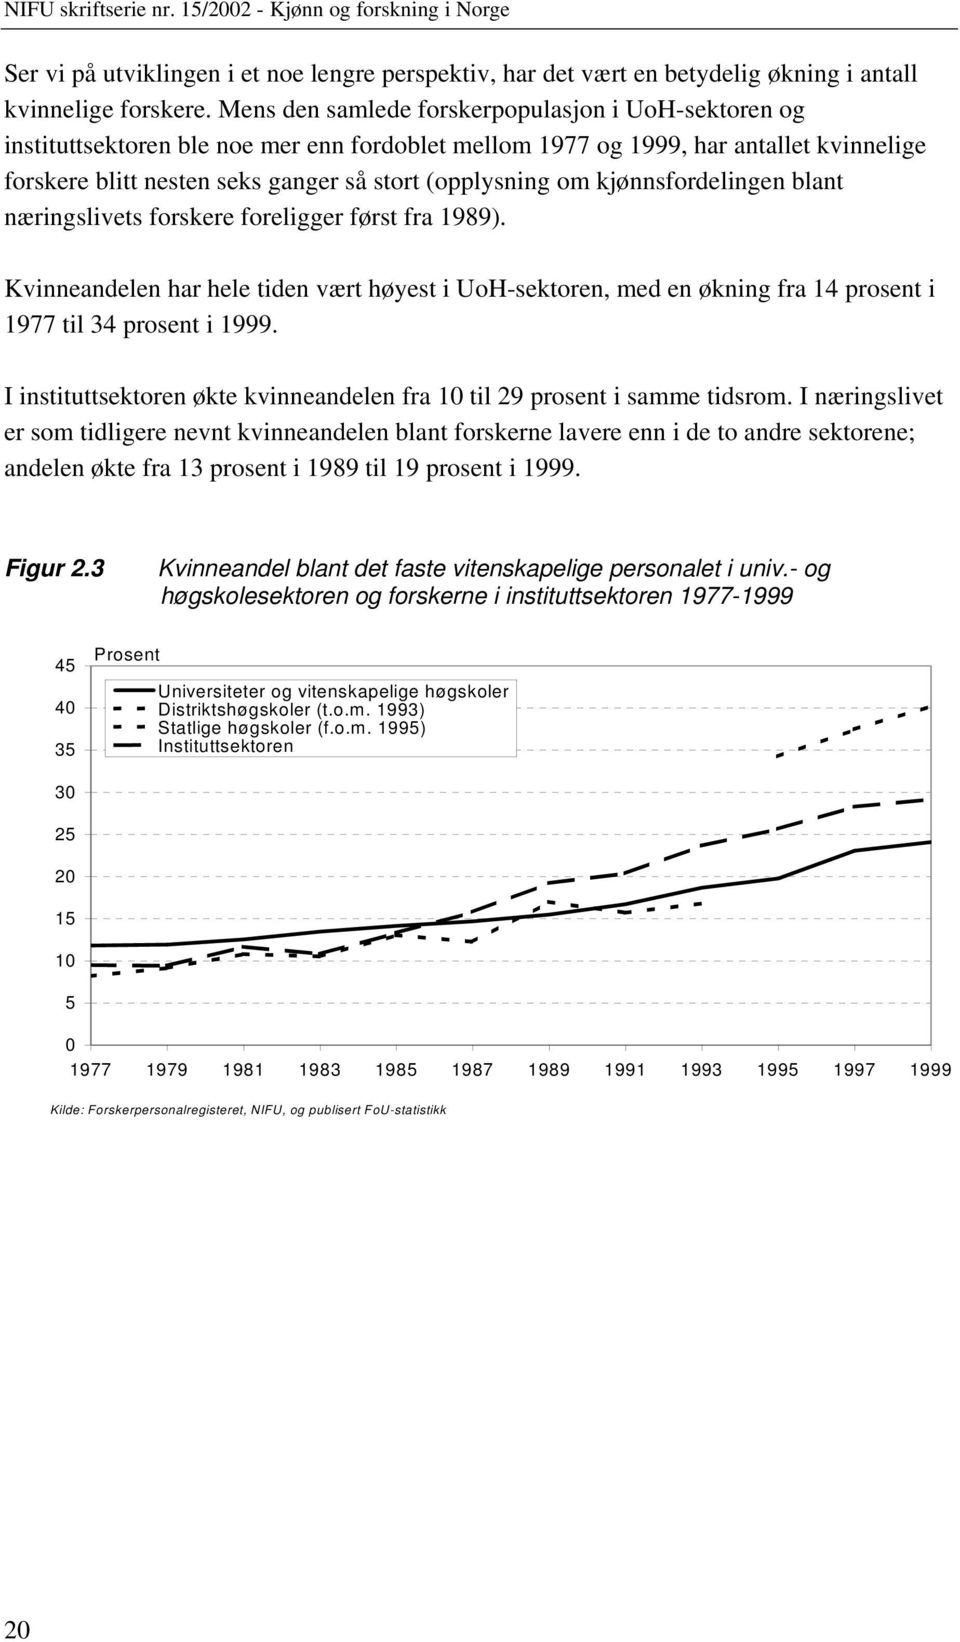 kjønnsfordelingen blant næringslivets forskere foreligger først fra 1989). Kvinneandelen har hele tiden vært høyest i UoH-sektoren, med en økning fra 14 prosent i 1977 til 34 prosent i 1999.